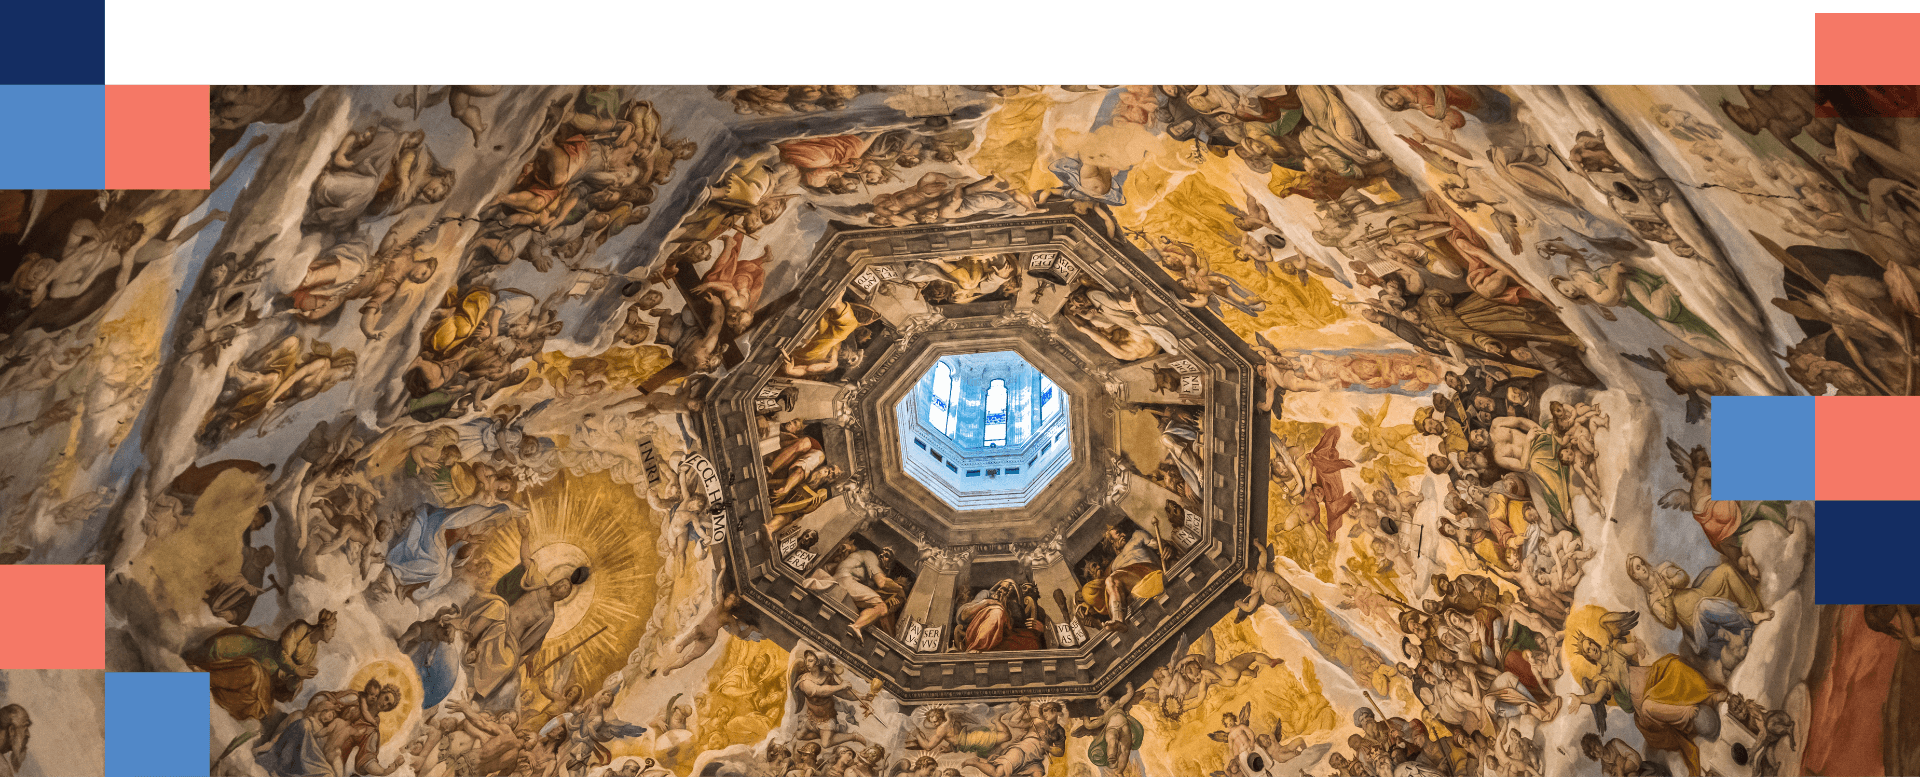 Fresken in der Kuppel der Kathedrale von Florenz